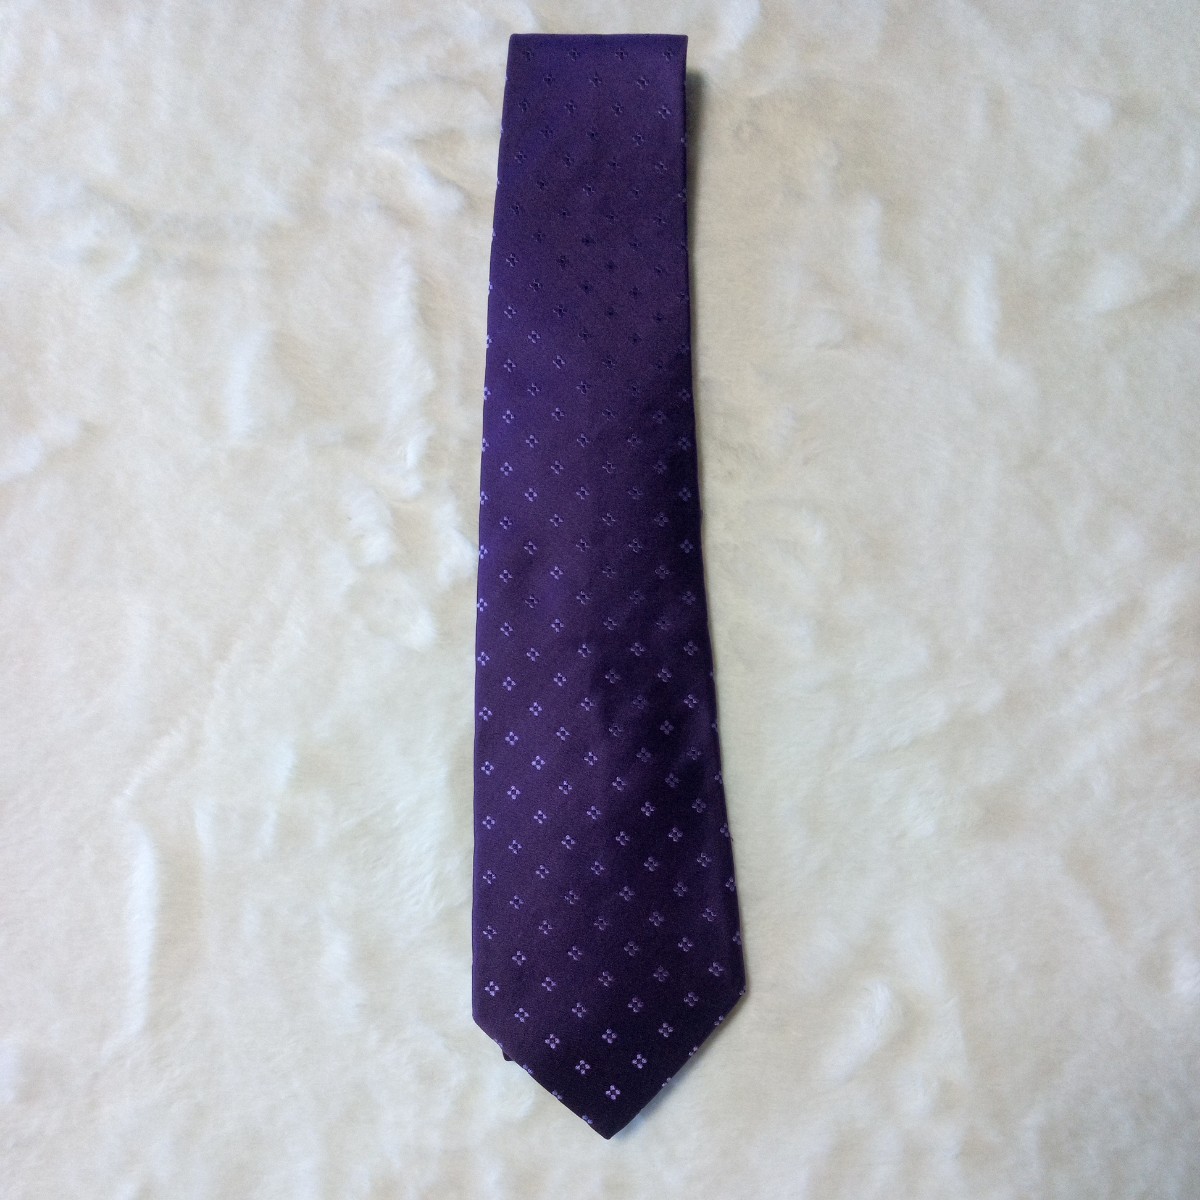 低価格の 美品ネクタイポール・スミス紫色 花柄 ネクタイ